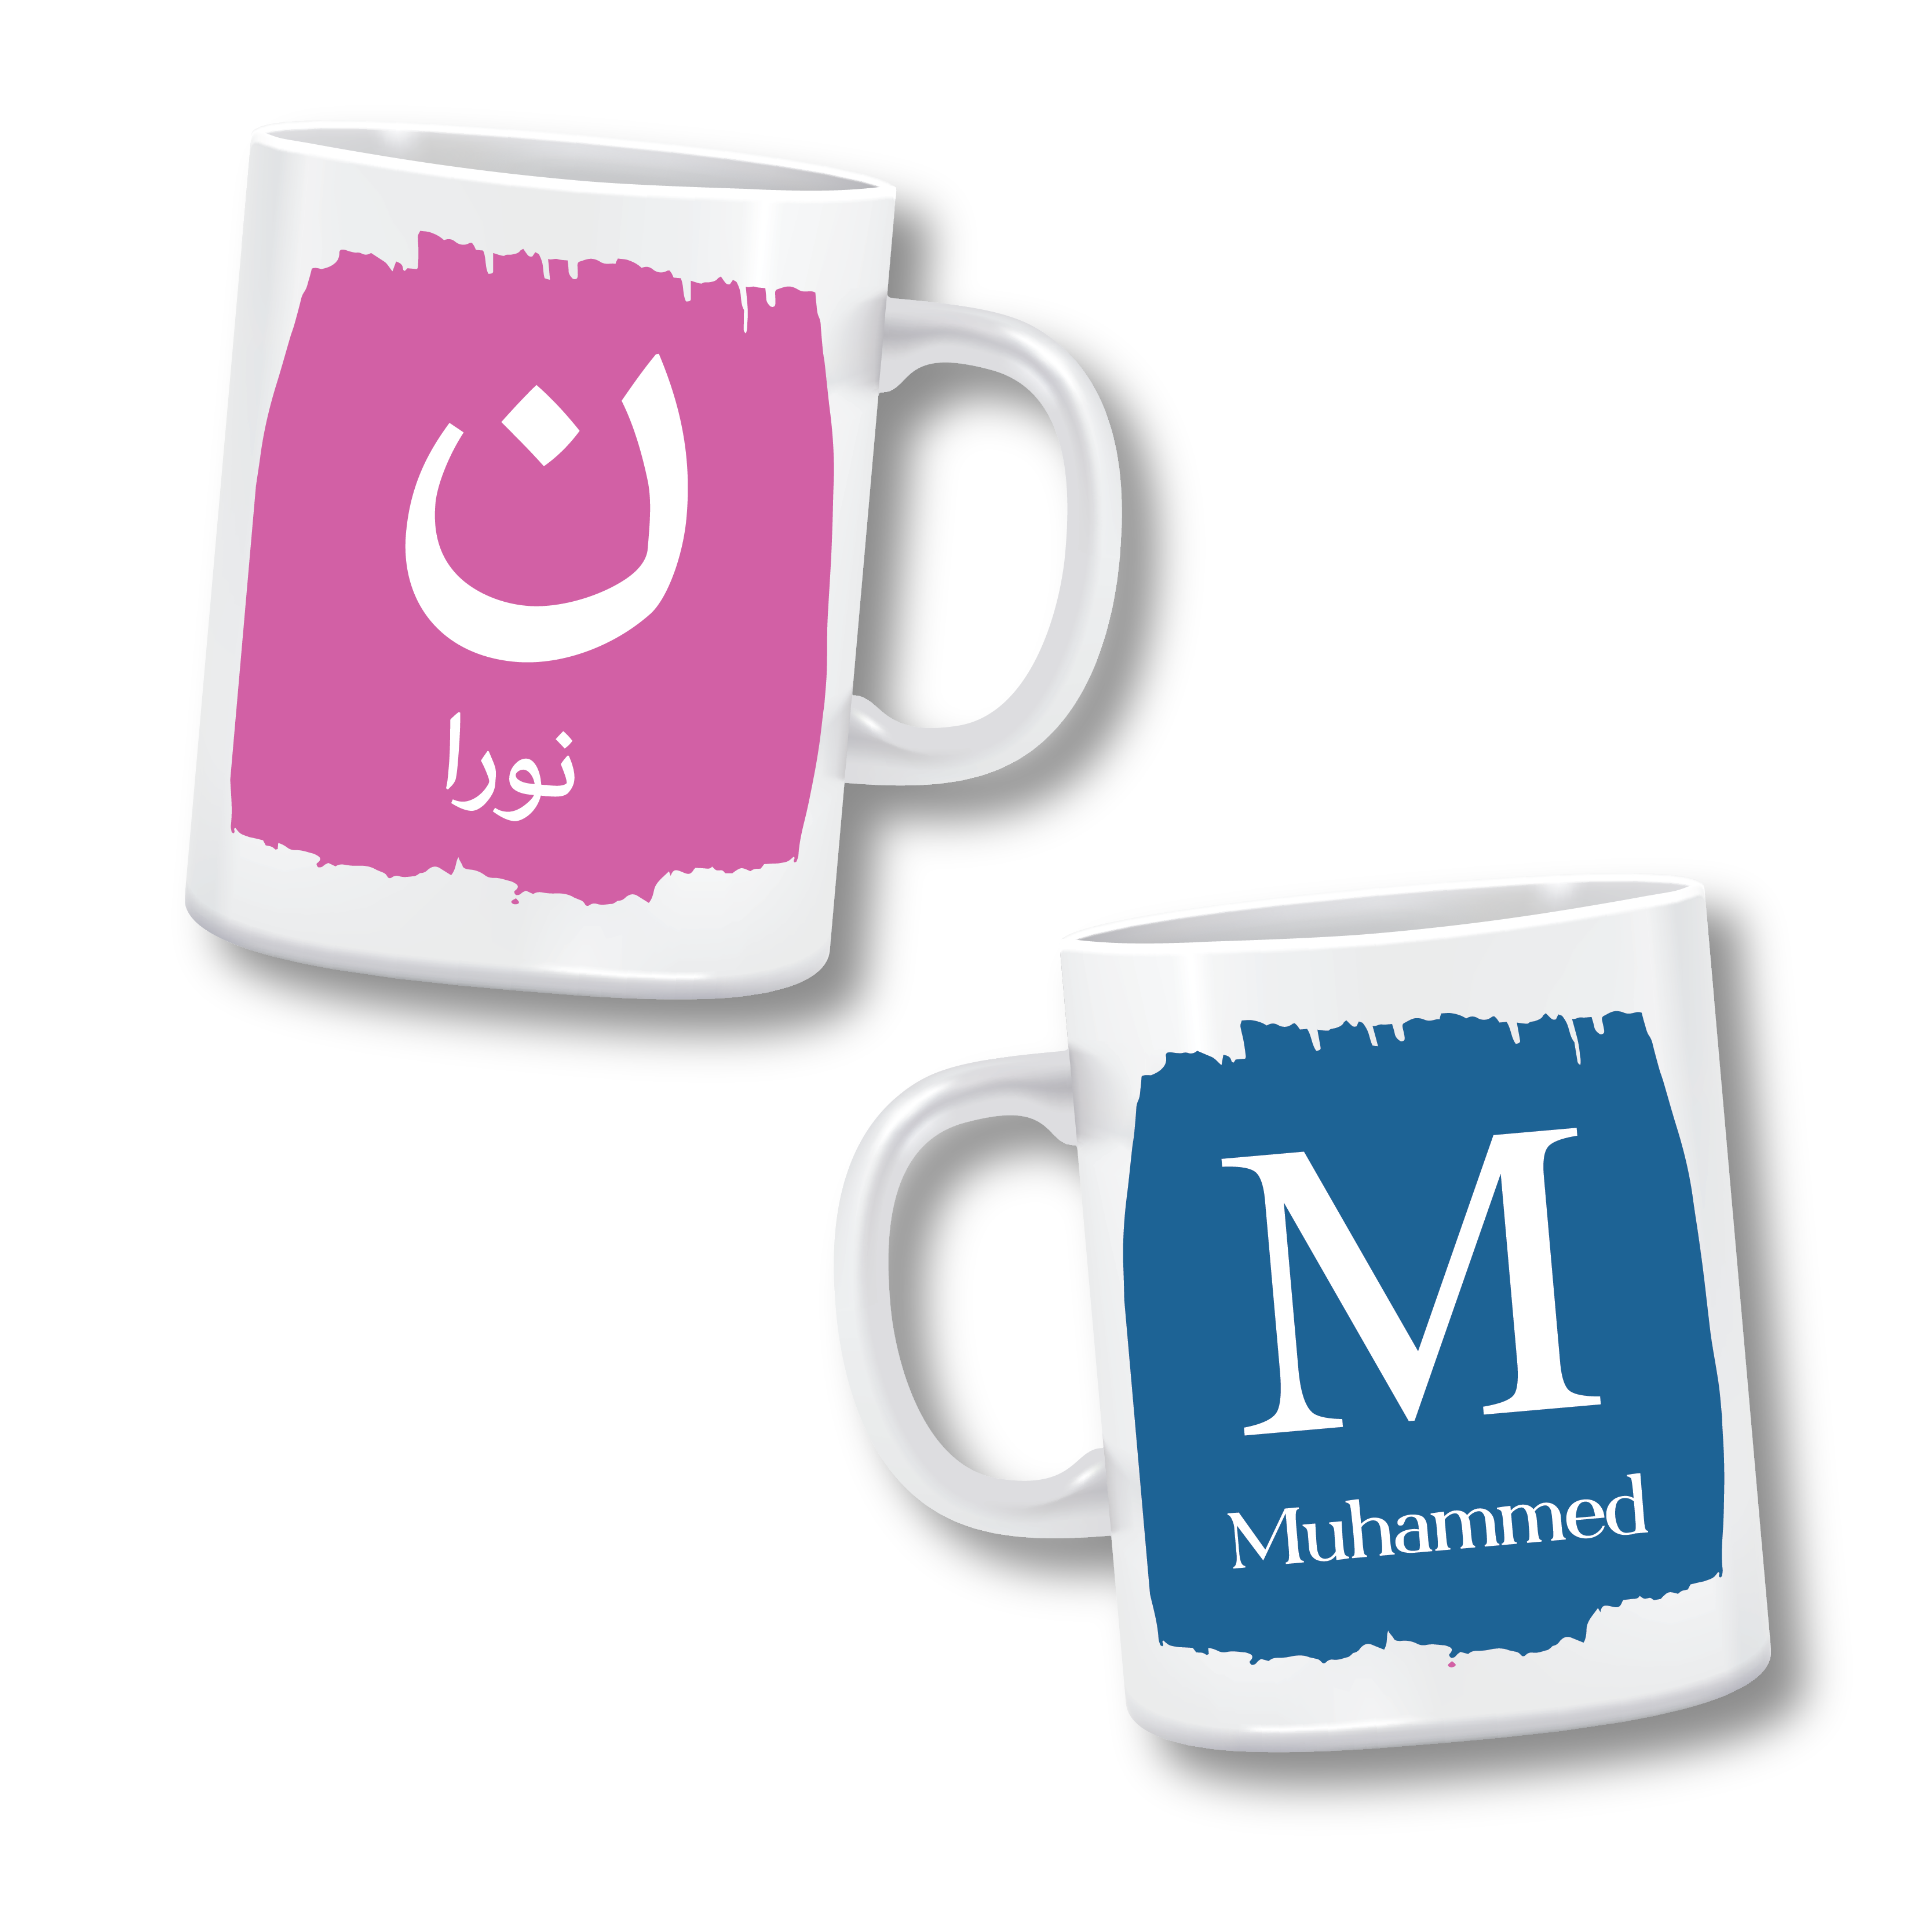 Arabic Letter Mugs